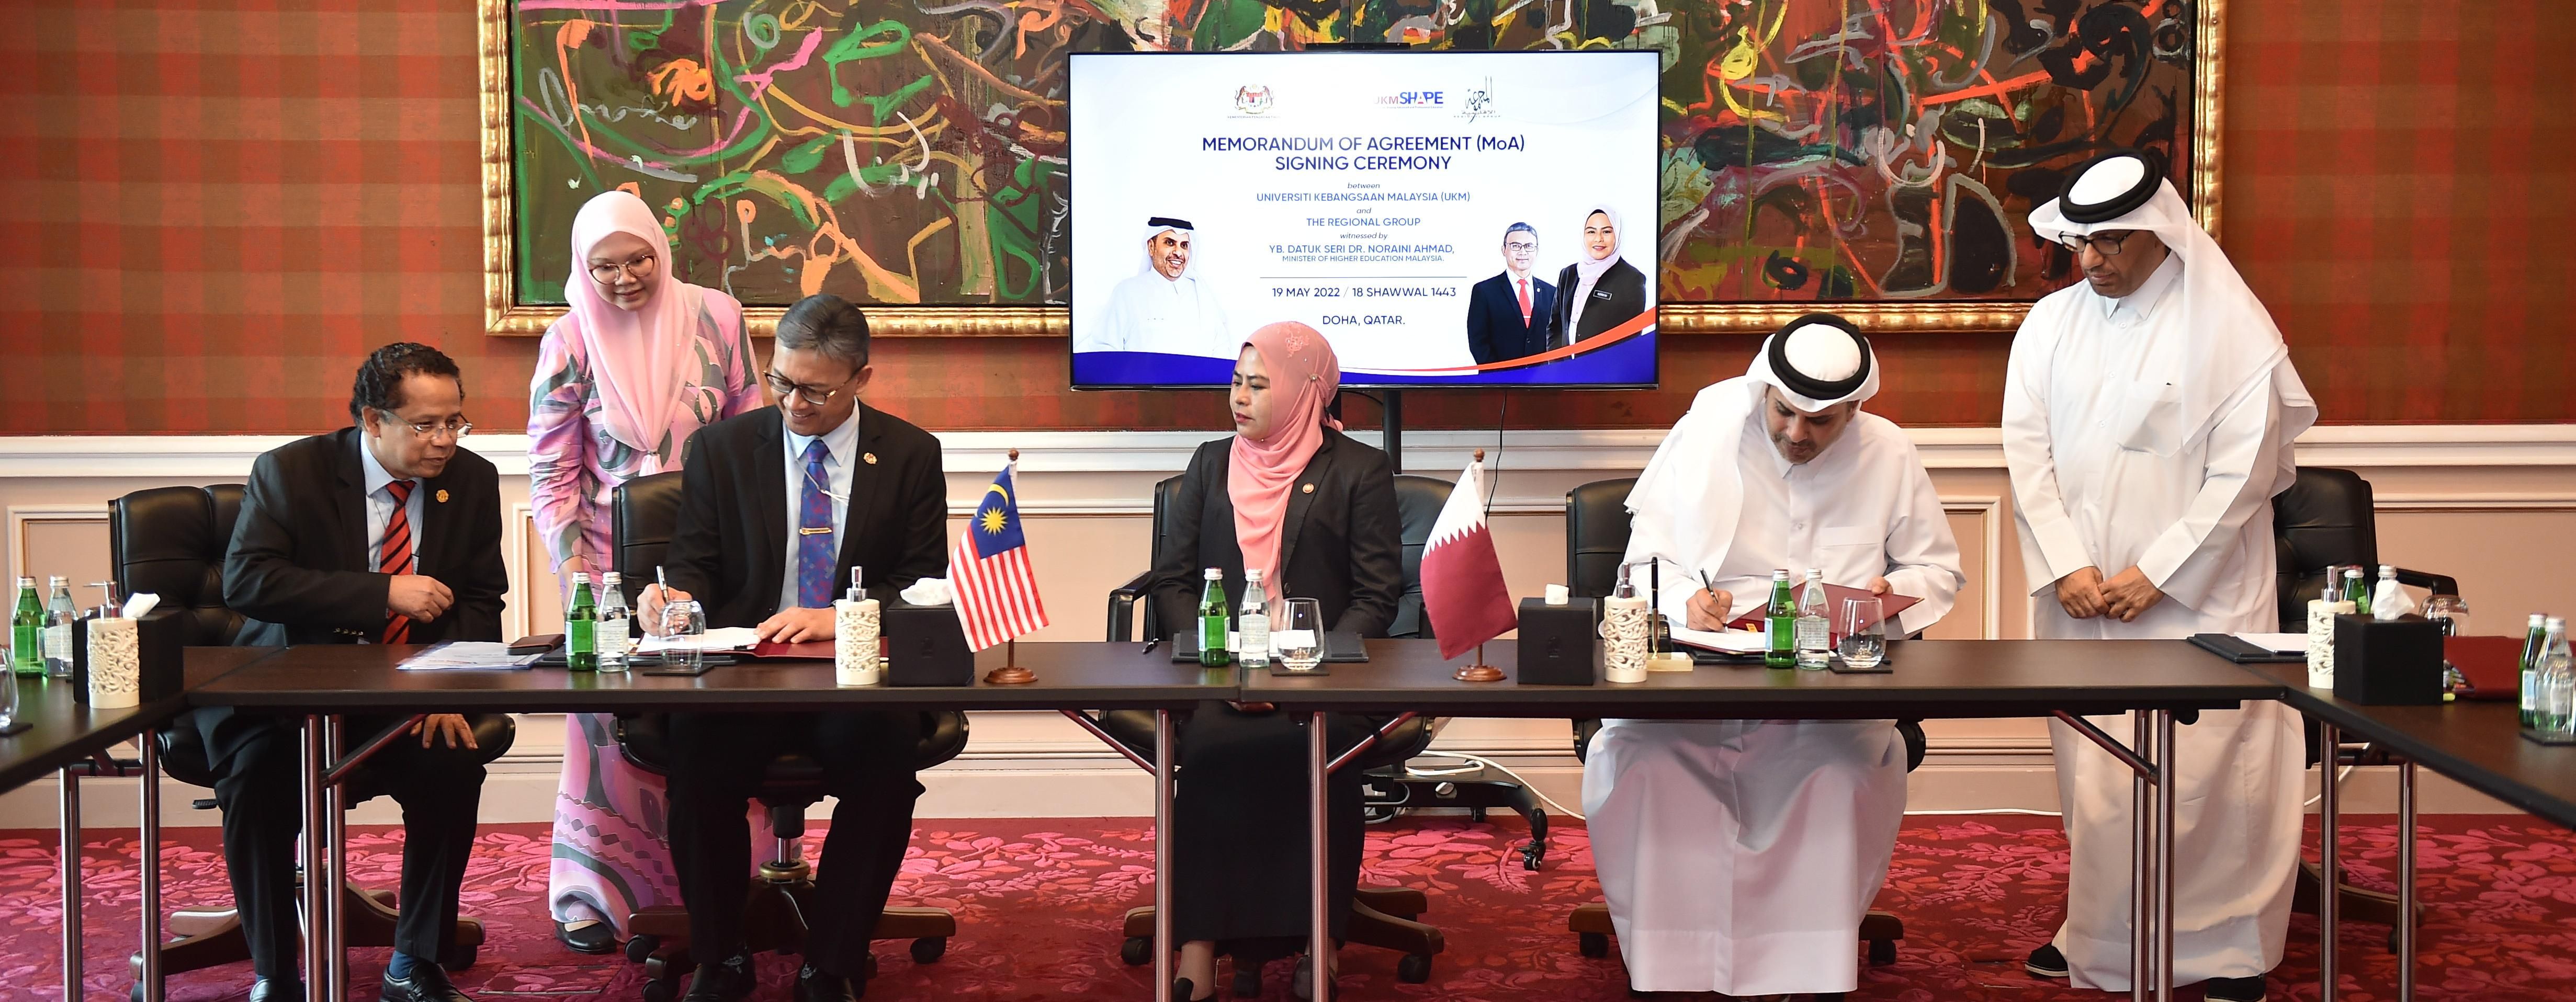 UKM Tandatangani Perjanjian Bersejarah bersama Regional Group of Qatar